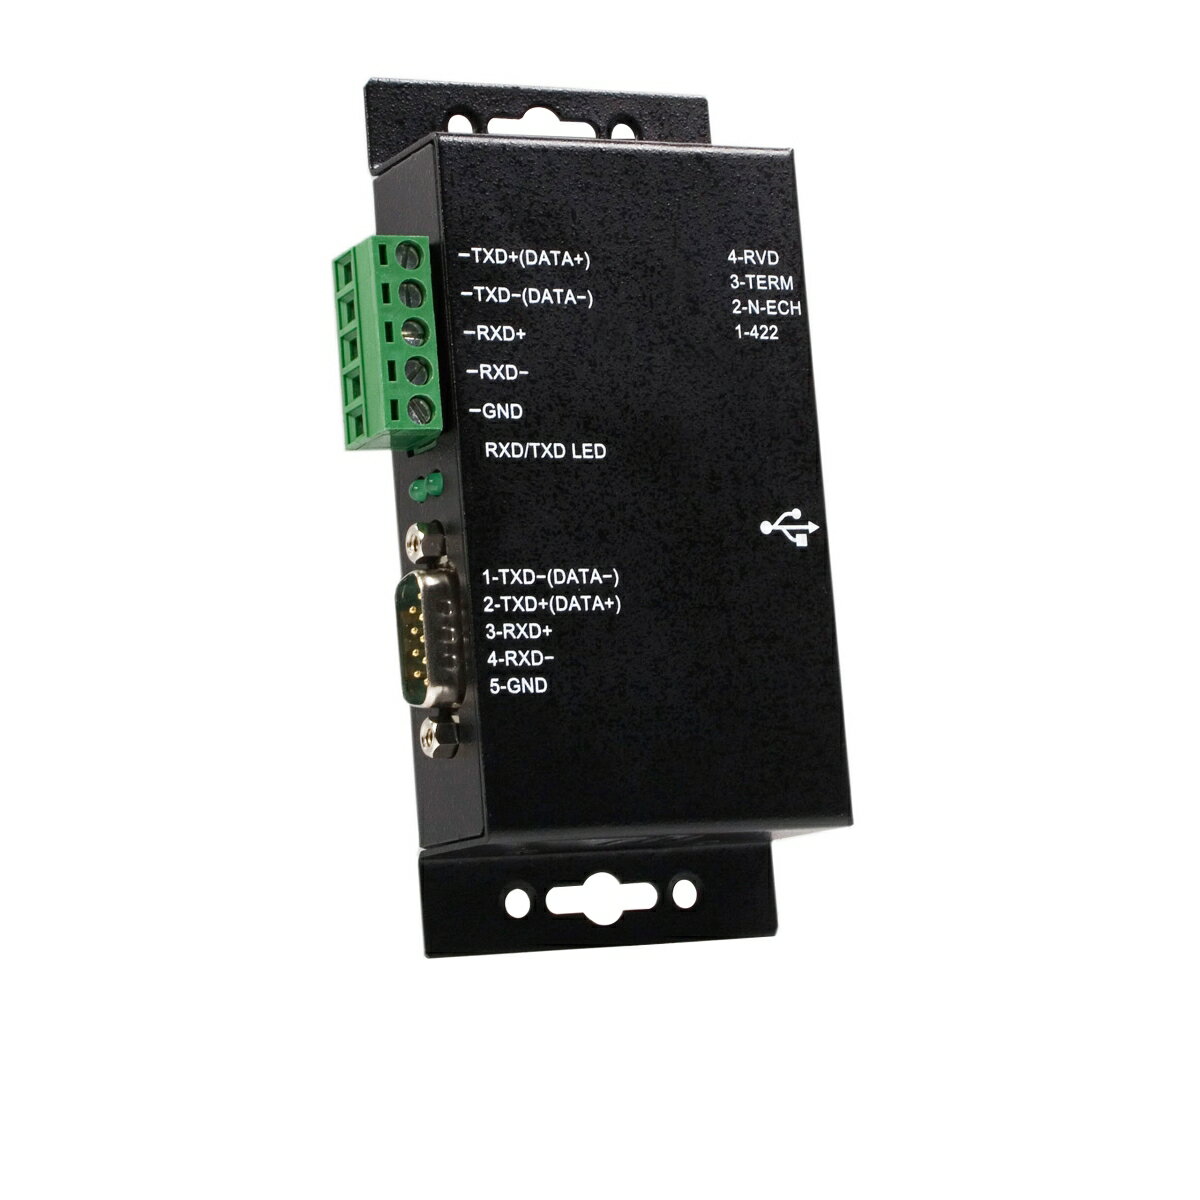 USBポートをRS422／RS485に変換する産業用途向け絶縁型シリアル変換アダプタ。パソコンのUSBポートから、アダプタのDB9ポートまたは配線接続されたターミナルブロック経由で、RS422またはRS485シリアル デバイスに接続することができます。

このUSB - シリアル変換アダプタは絶縁保護されており、センシティブな制御機器が接続中にダメージを受けないようにするため、高価な産業用シリアルデバイスを接続する際に優れたソリューションを提供します。

本RS422／485変換アダプタは、外付け電源アダプタを使わず、ホストコンピュータのUSBポートから電源を取って接続されたシリアルデバイスに給電します。また、頑丈な造りで耐久性が高く、様々な場所に設置が可能です。

StarTech.comでは2年間保証と無期限無料技術サポートを提供しています。